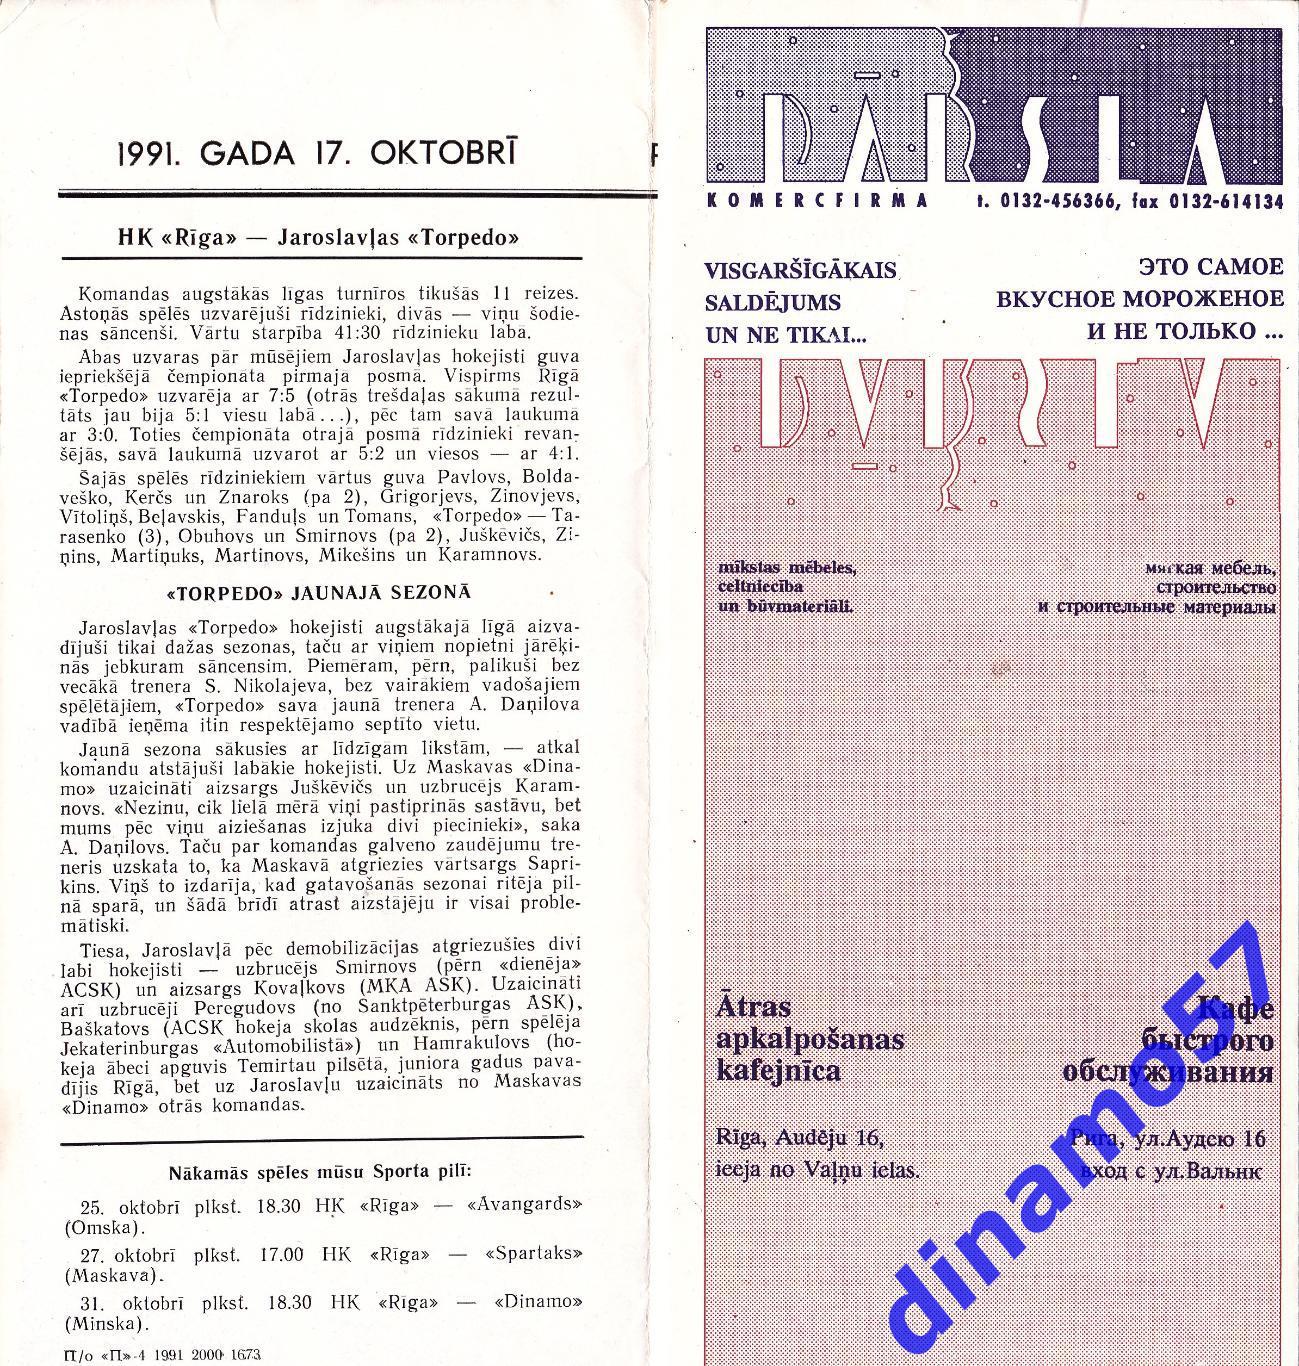 ХК Рига - Торпедо Ярославль 17.10.1991